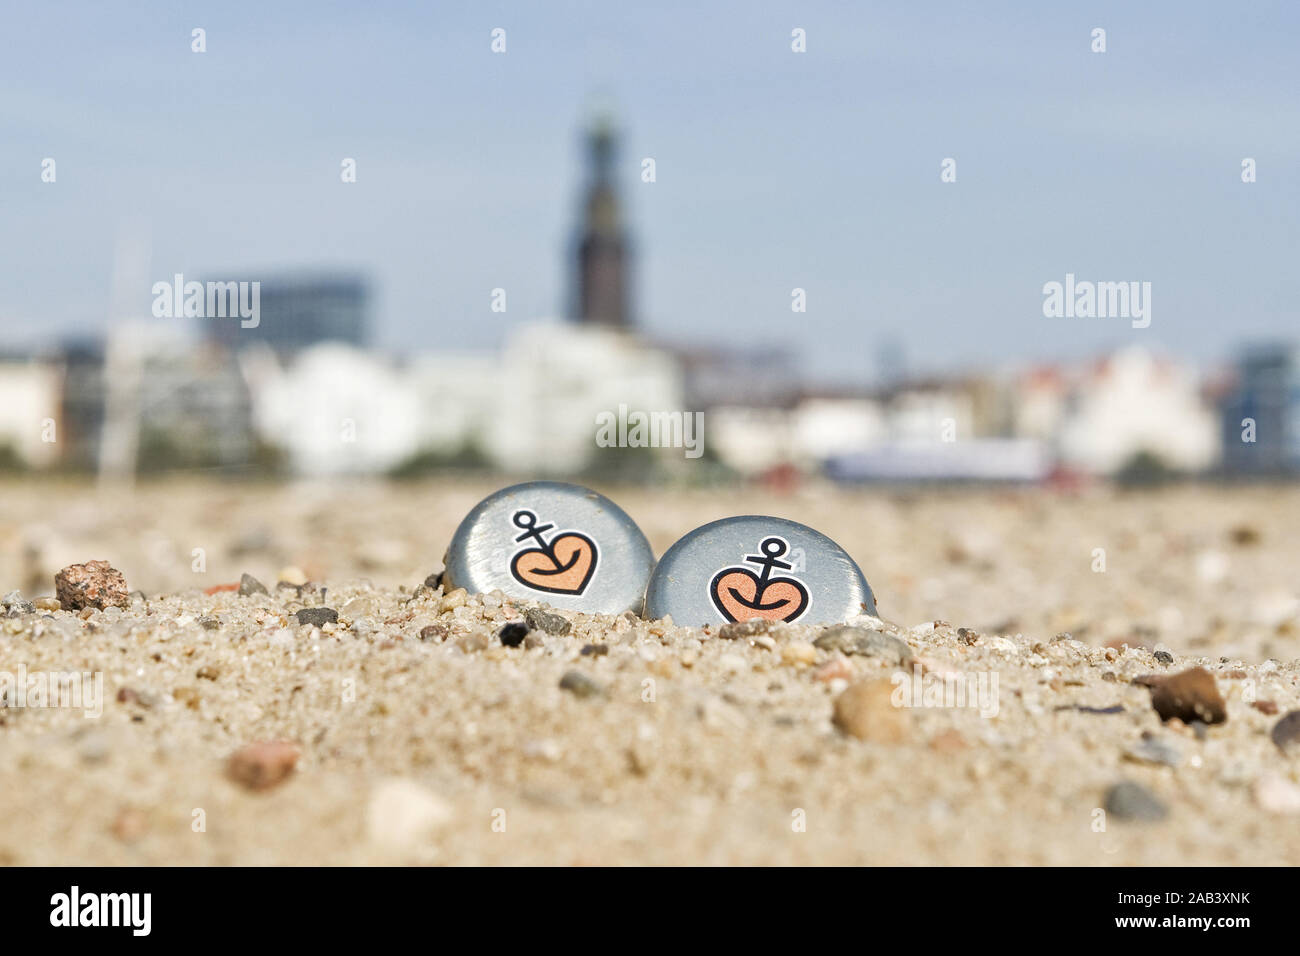 Zwei Astra- Kronkorken am Strand im Hamburger Hafen |Two Astra crown corks on the beach in the port of Hamburg| Stock Photo